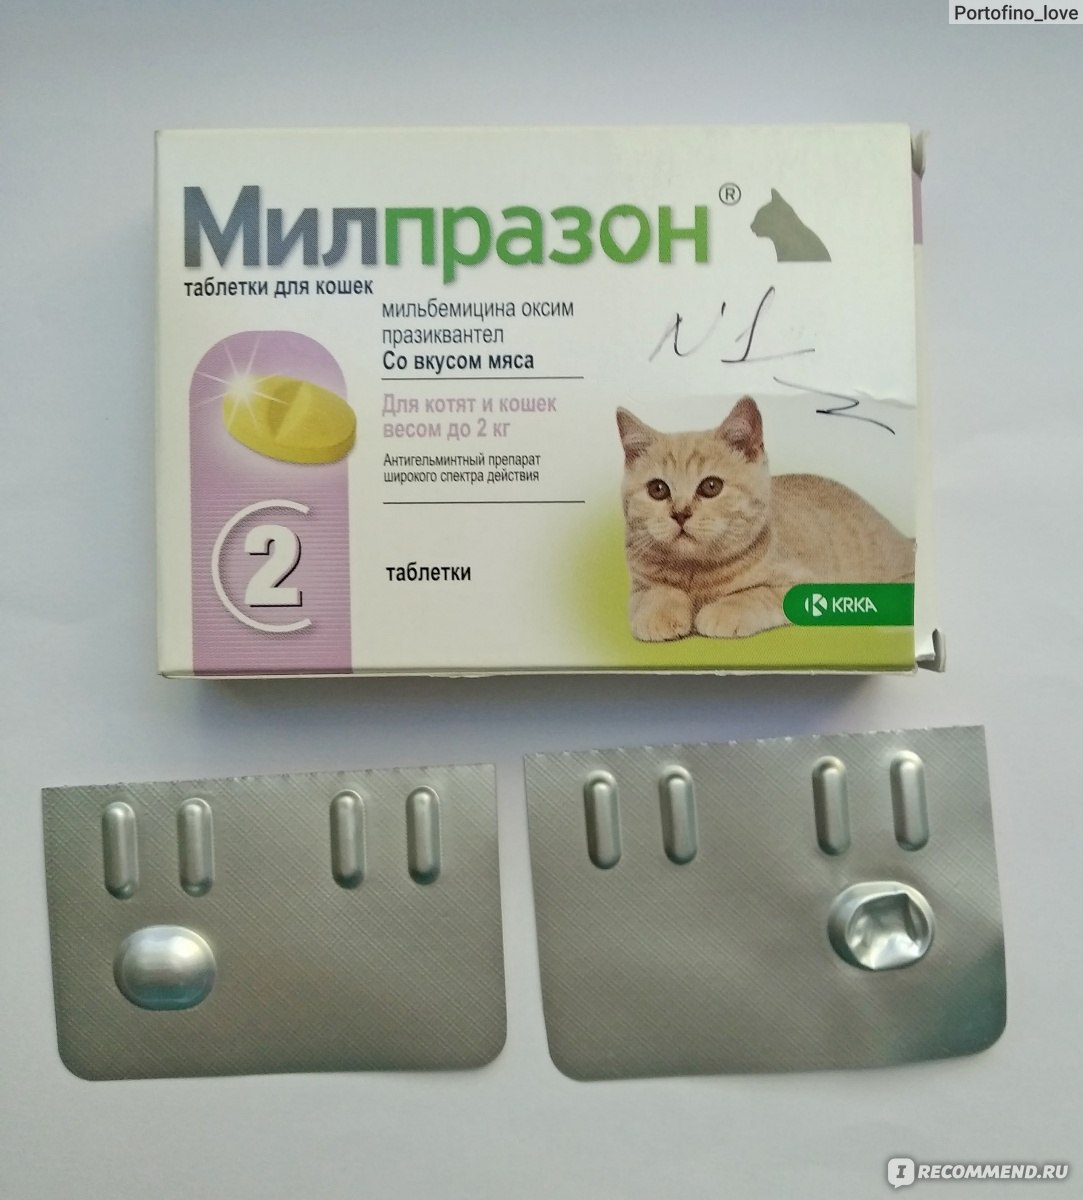 Милпразон таблетки для кошек